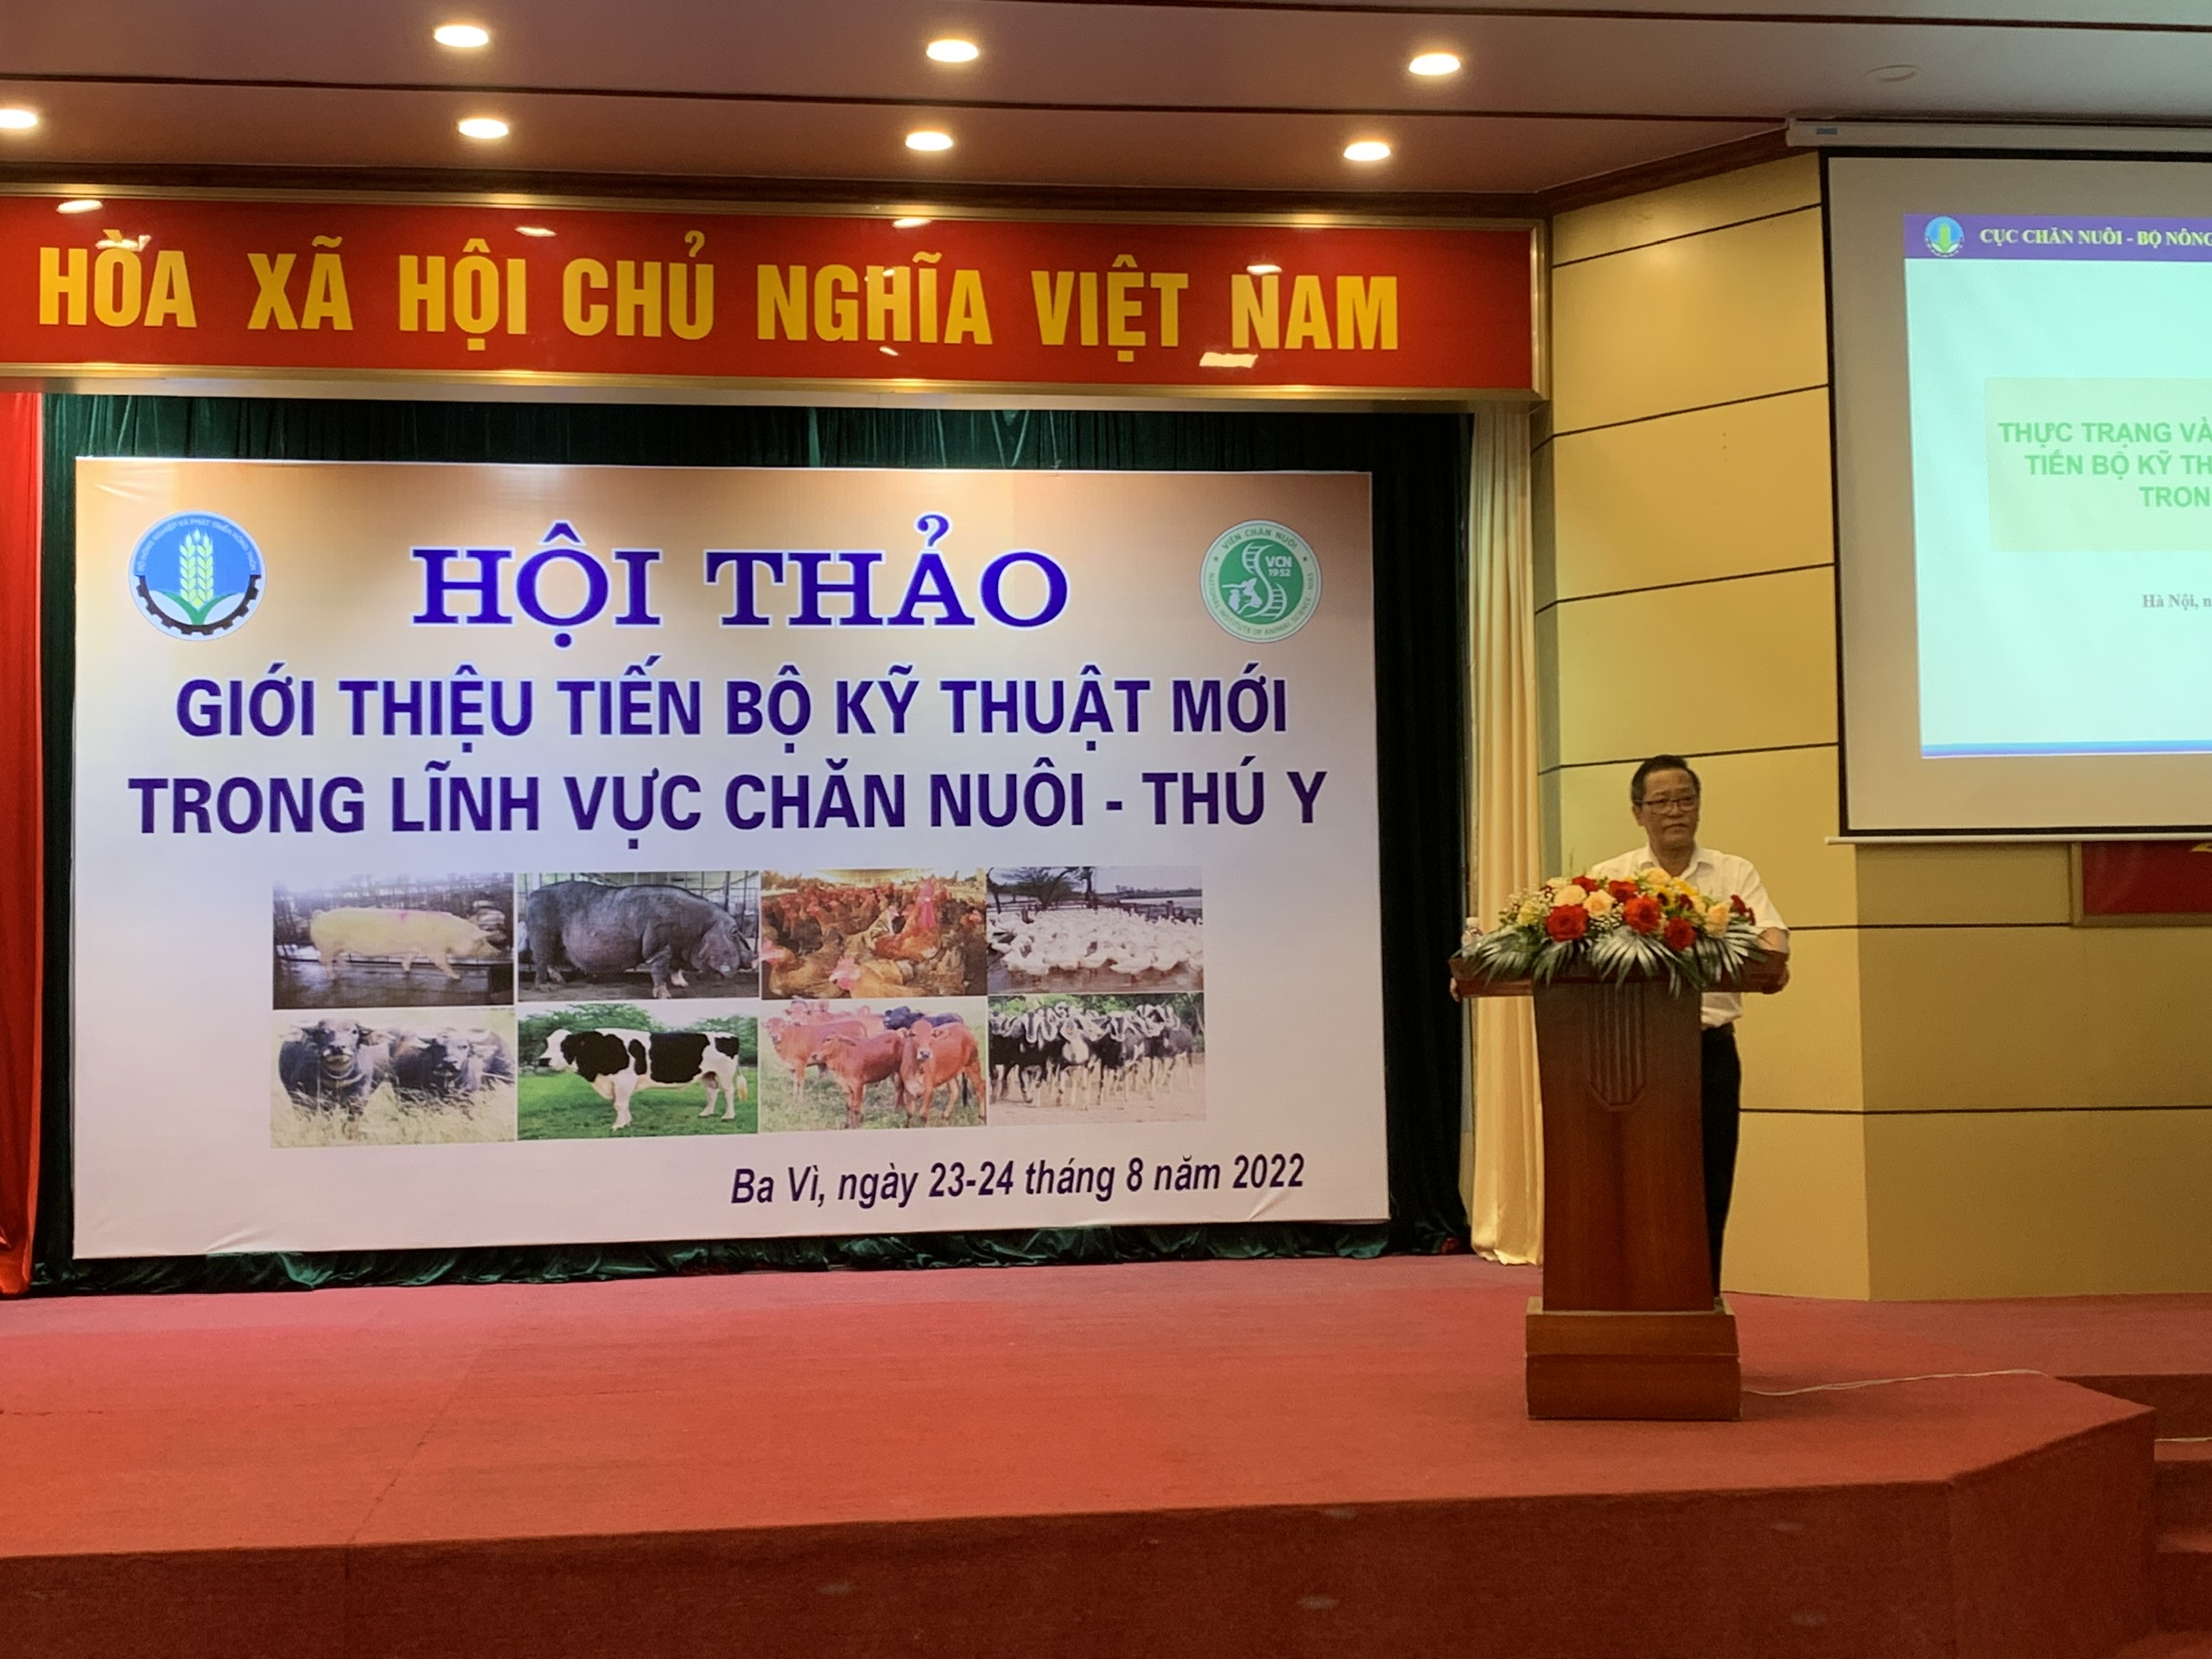 Hội thảo “Giới thiệu các tiến bộ kỹ thuật mới lĩnh vực chăn nuôi – thú y”